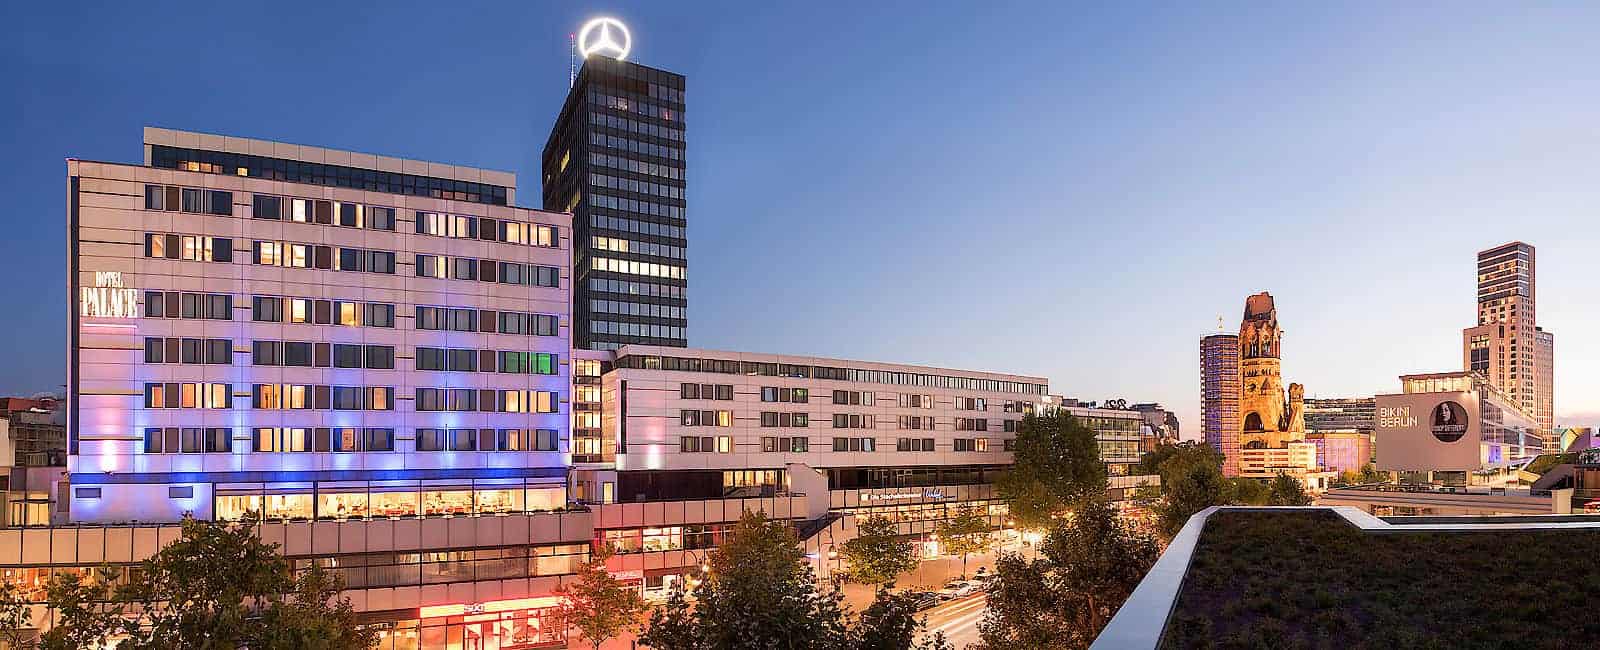 افضل 15 فندق في برلين من المسافرون العرب